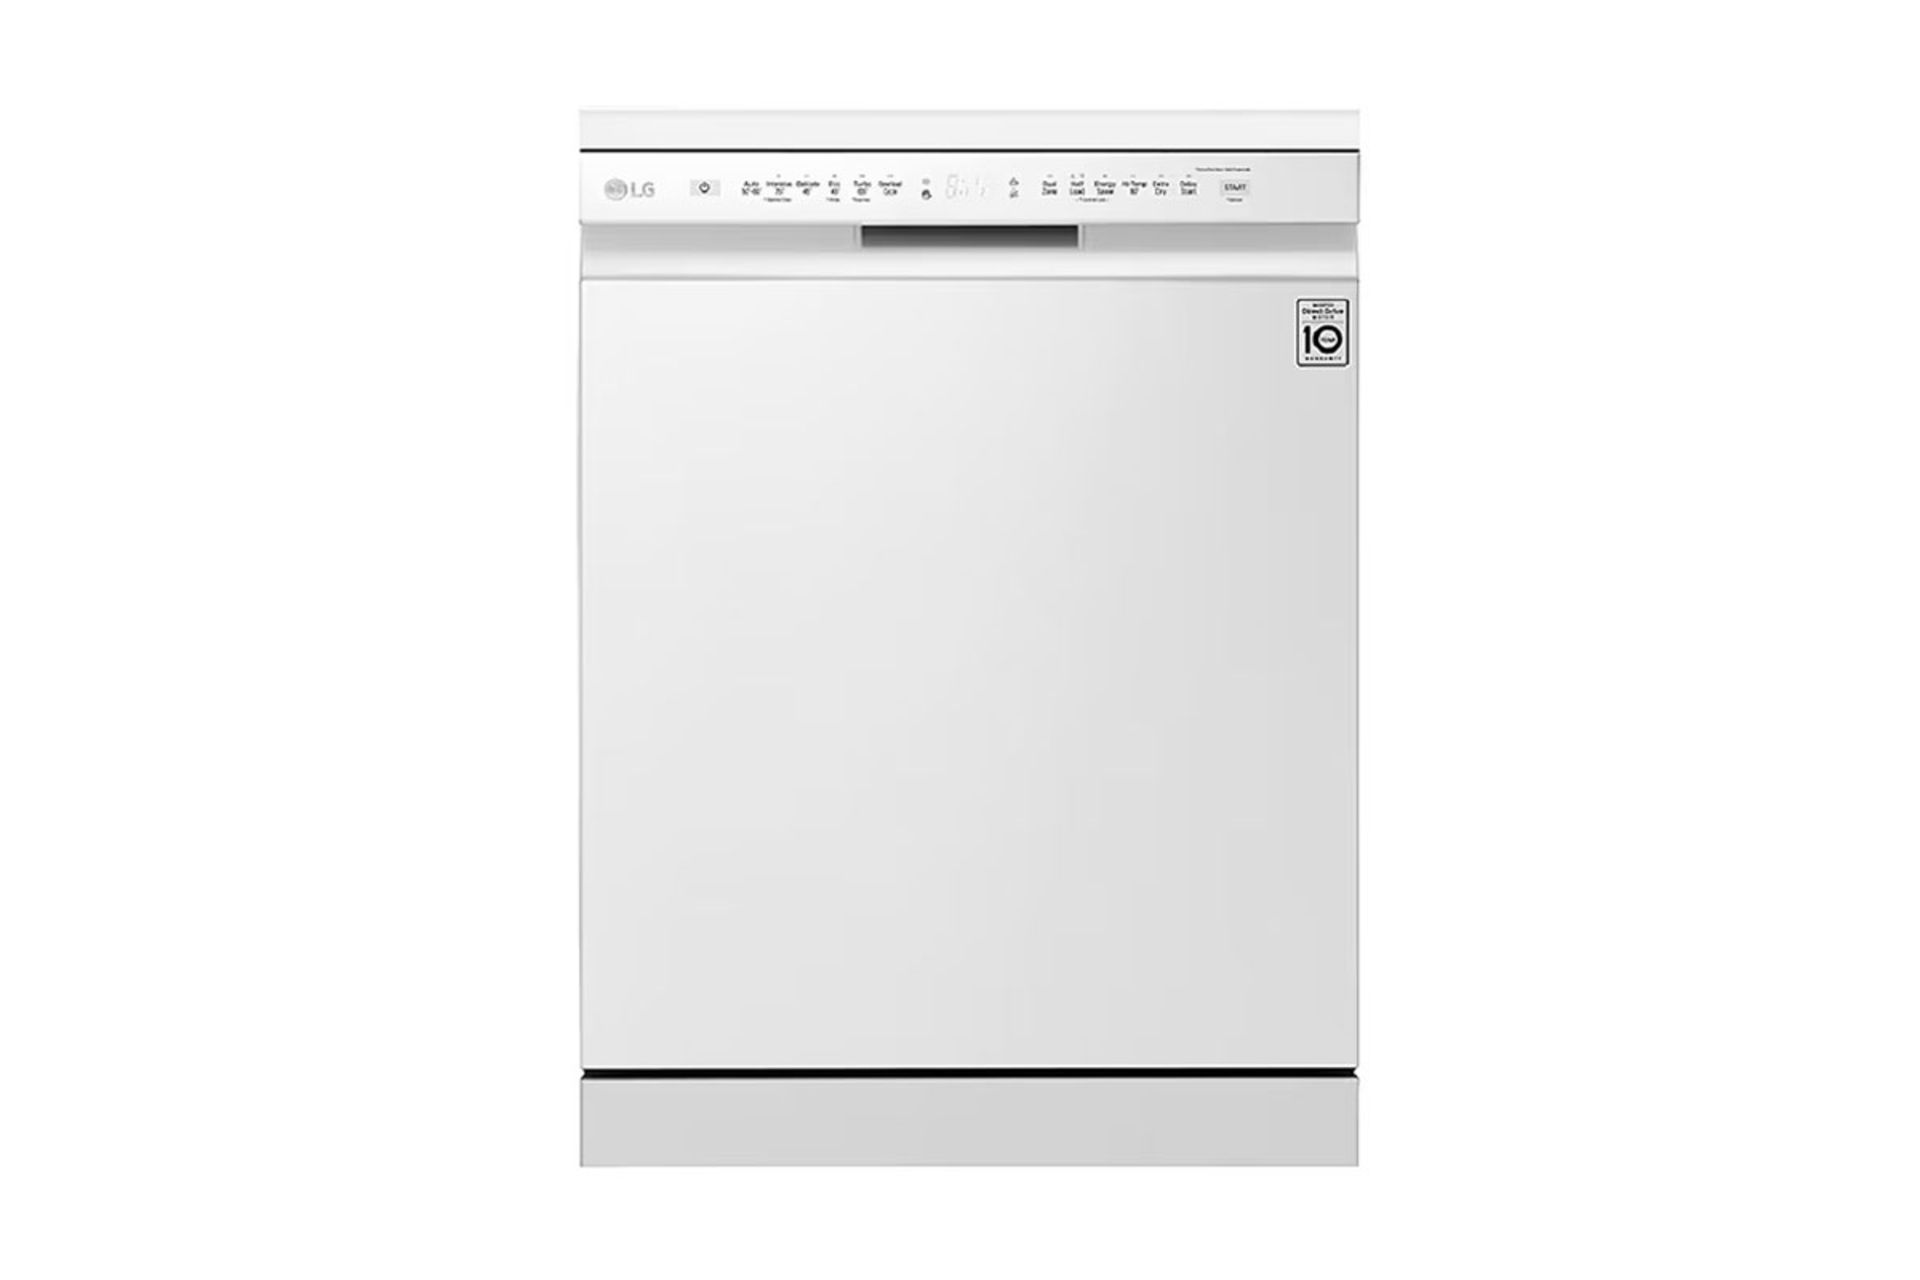 ماشین ظرفشویی ال جی DFB512FW از نمای جلو